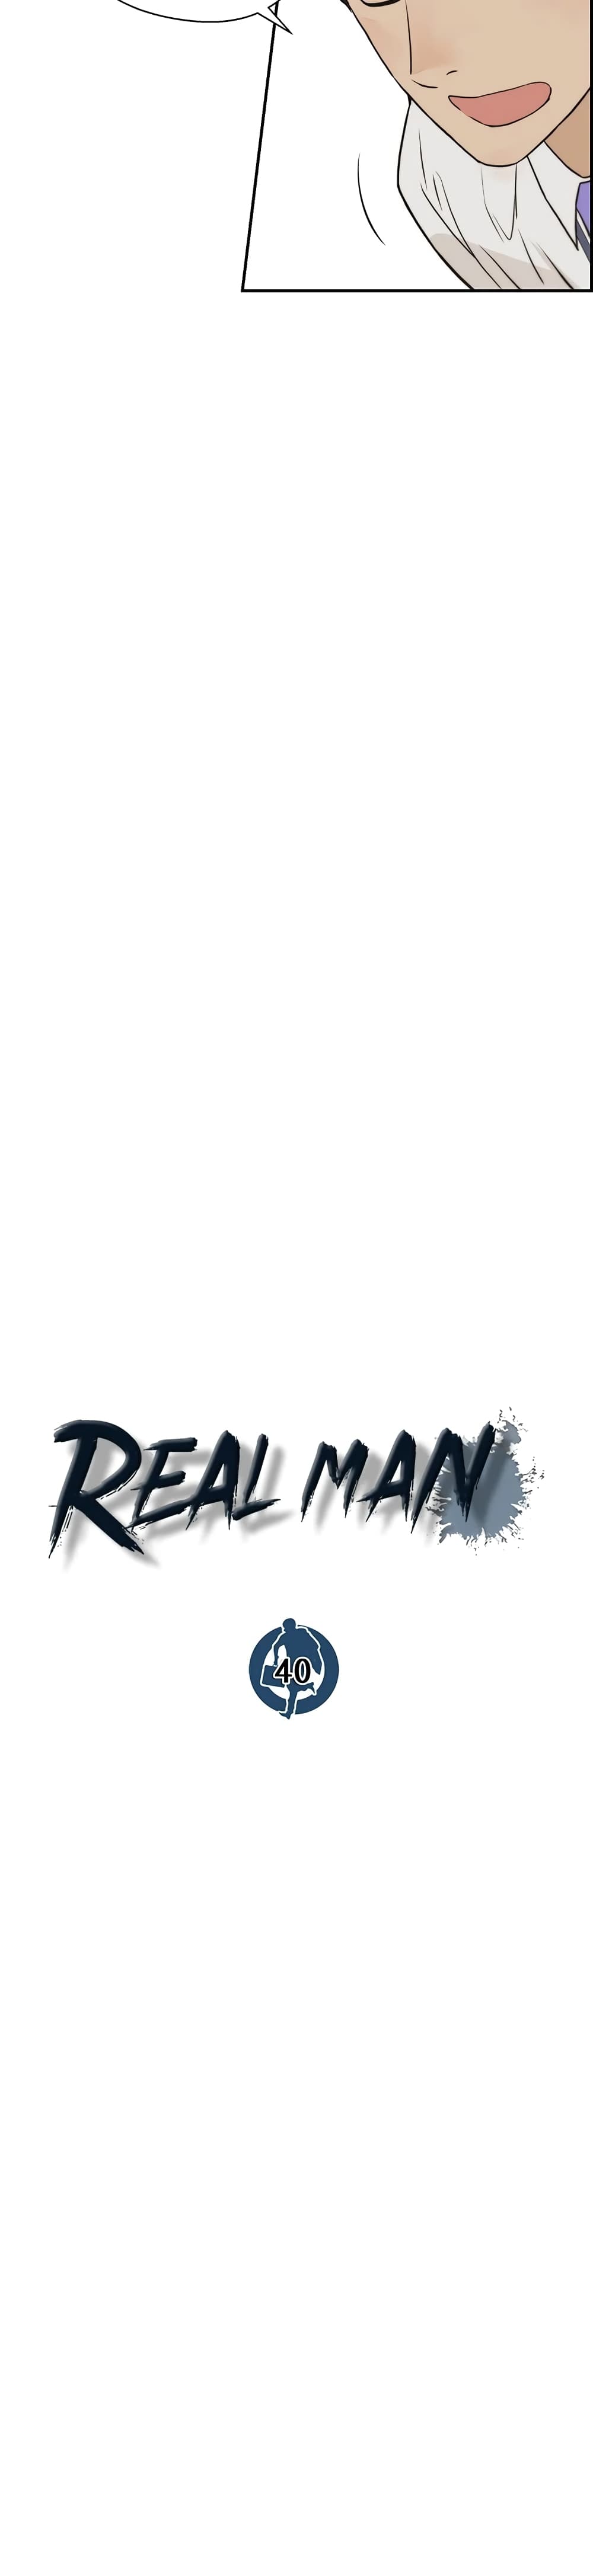 Real Man 40-40